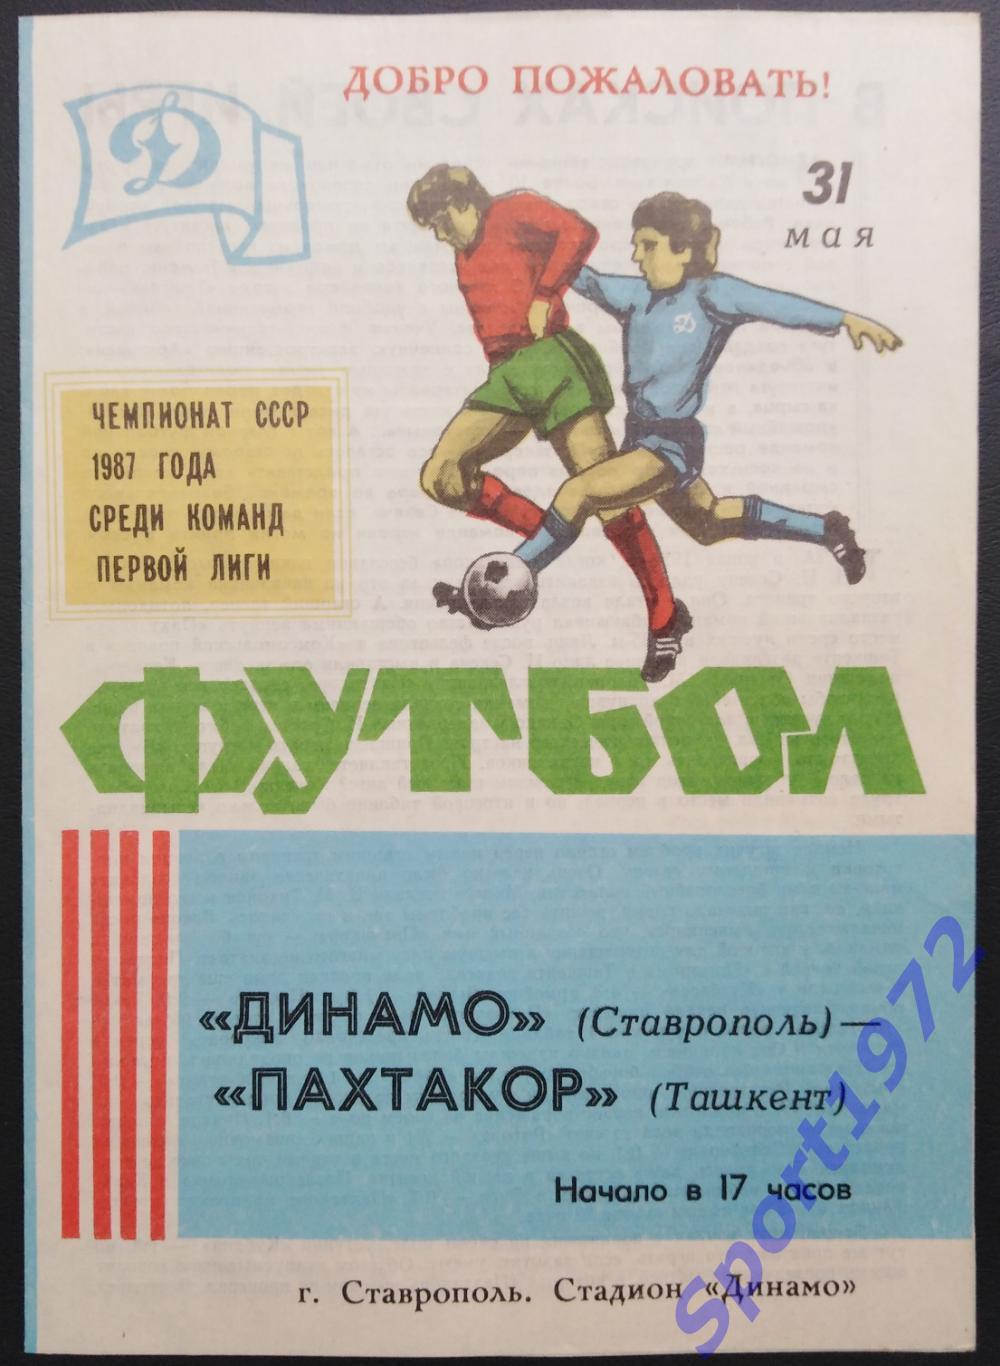 1 До 84 футболист звачки плакат пахтакор.